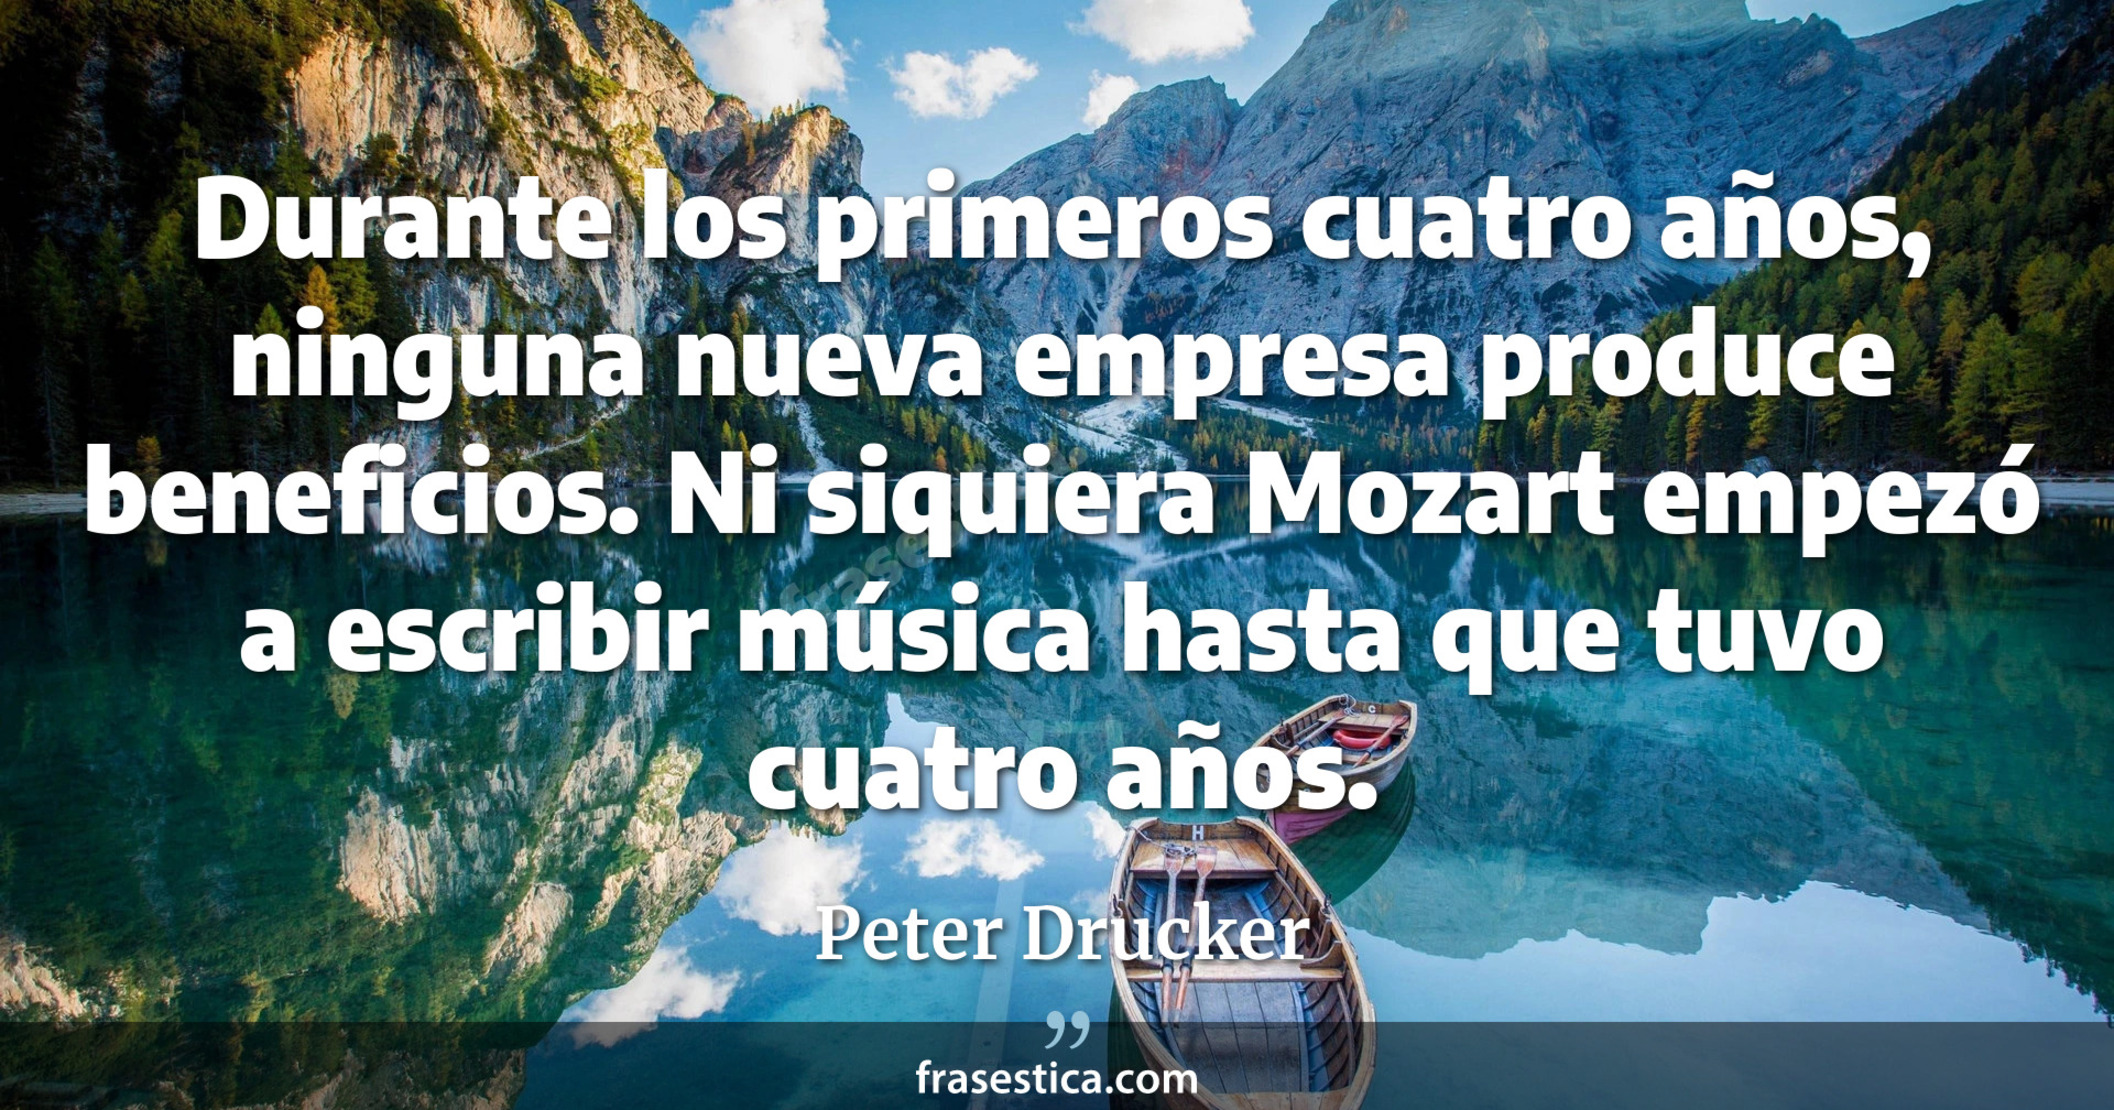 Durante los primeros cuatro años, ninguna nueva empresa produce beneficios. Ni siquiera Mozart empezó a escribir música hasta que tuvo cuatro años. - Peter Drucker